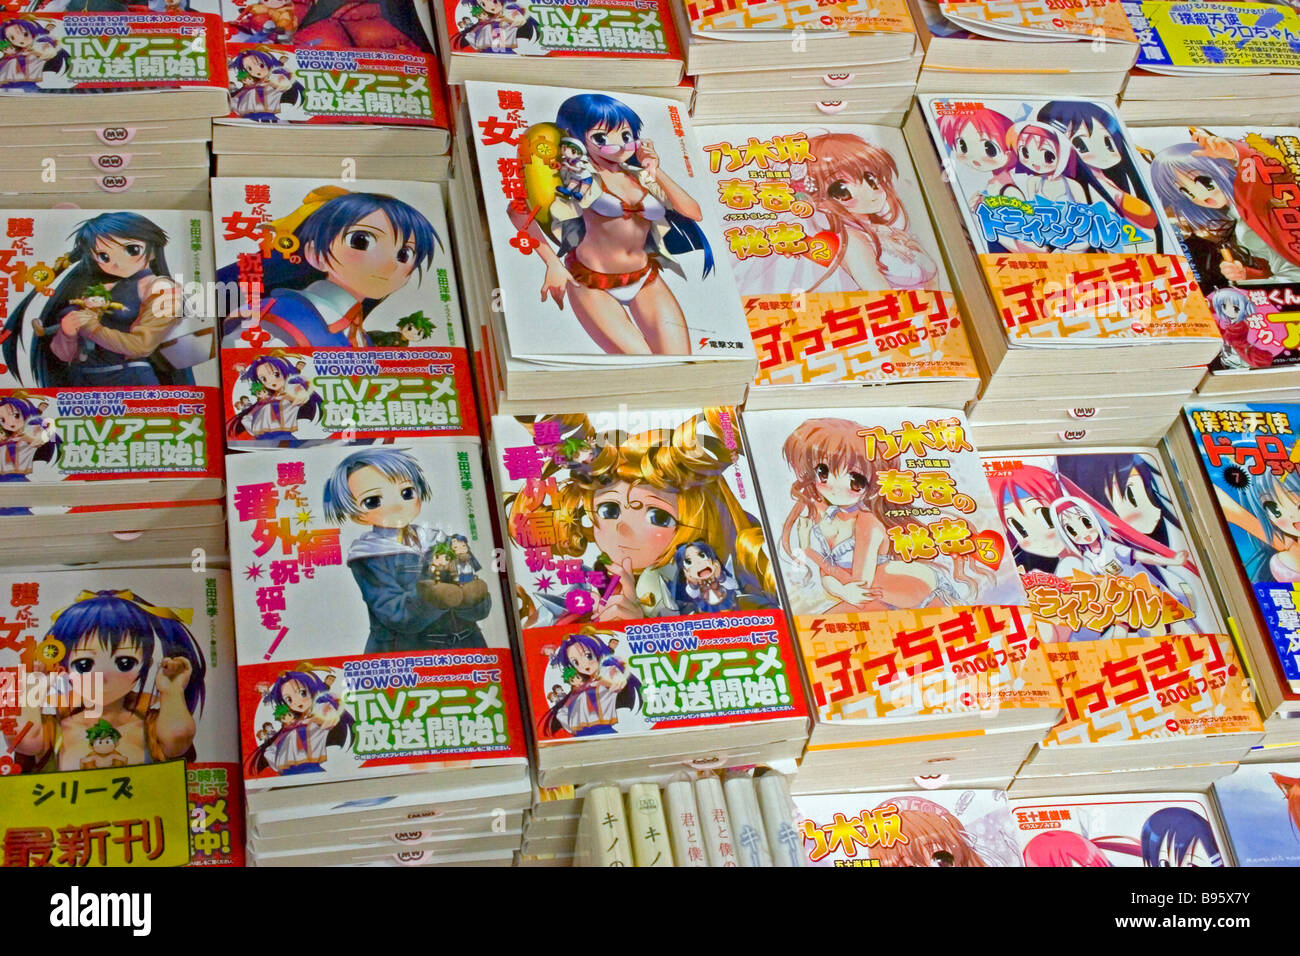 Giappone Honshu Tokyo Akihabara Electronics District manga giapponese di libri con brillantemente illustrati i coperchi. Foto Stock